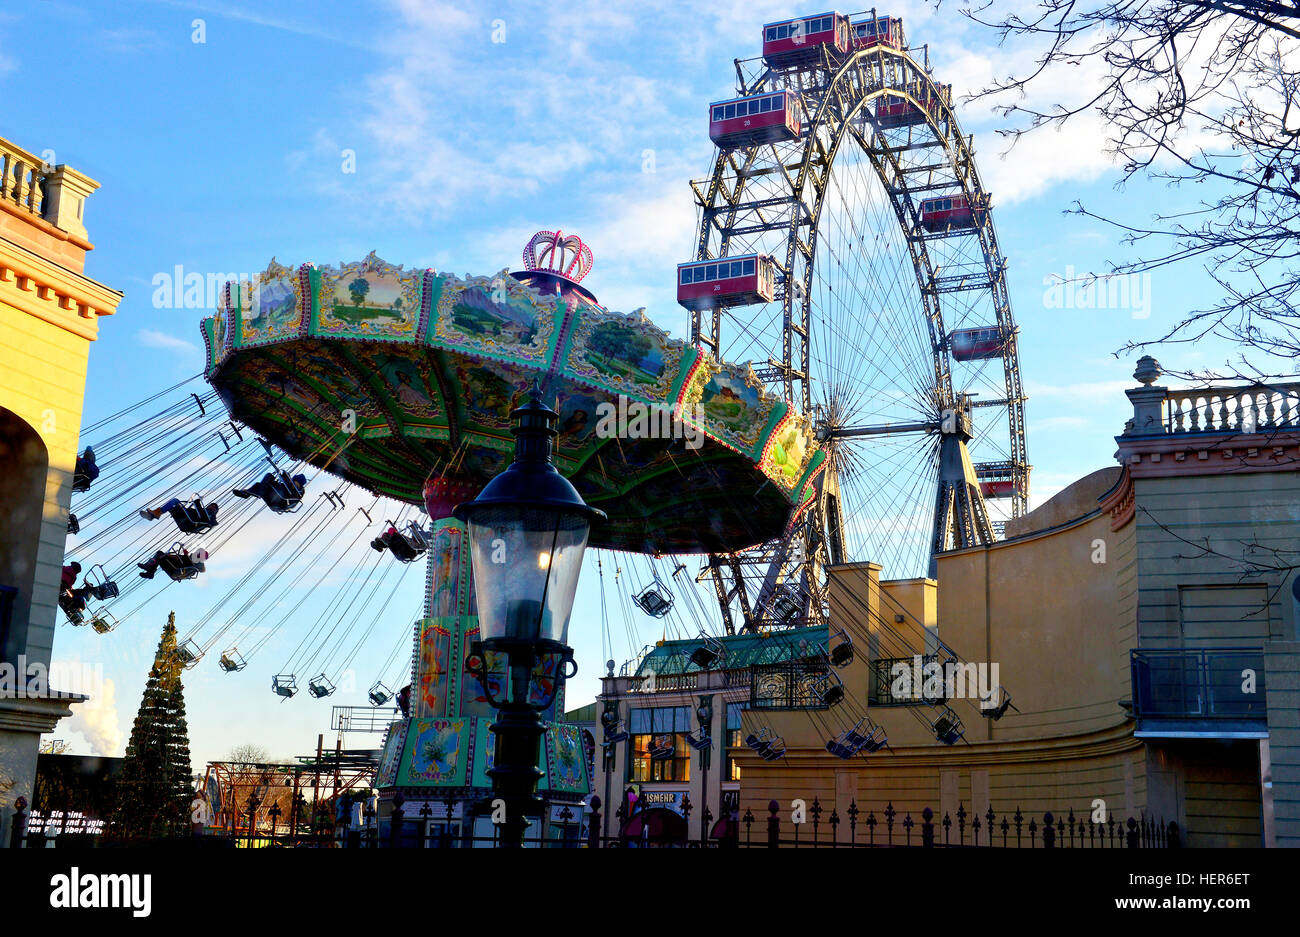 La célèbre roue géante du parc d'attractions Vienna Prater à Leopoldstad, Vienne (Wien) Autriche Banque D'Images